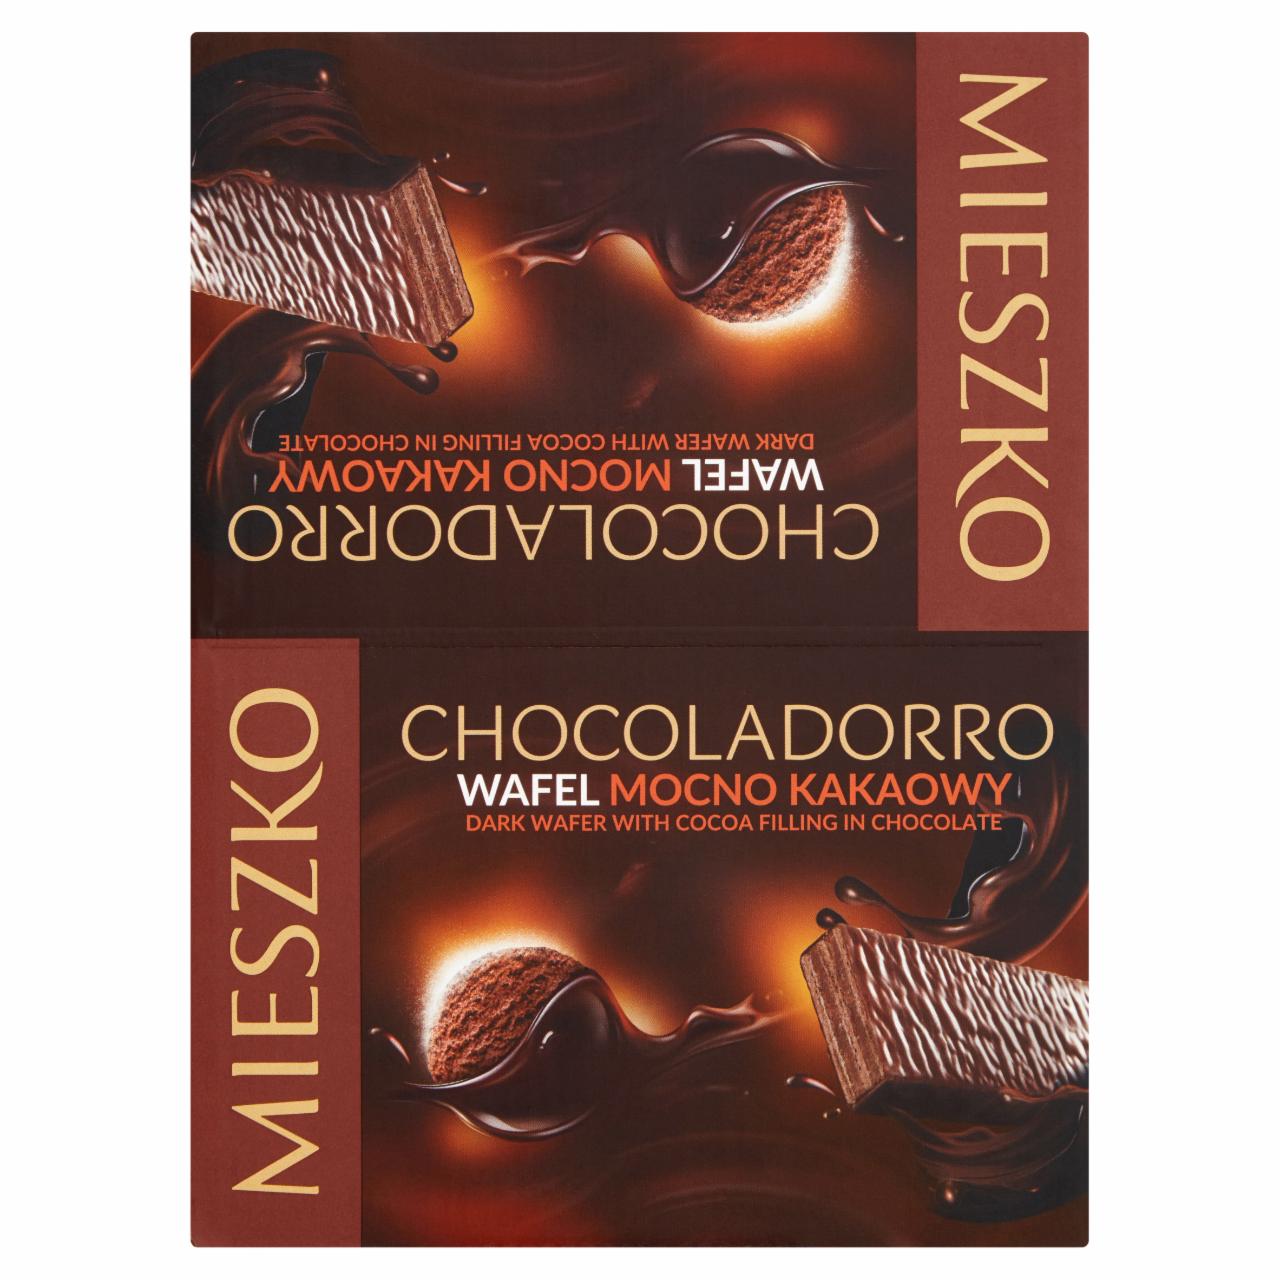 Zdjęcia - Mieszko Chocoladorro Wafel mocno kakaowy 35 x 34 g